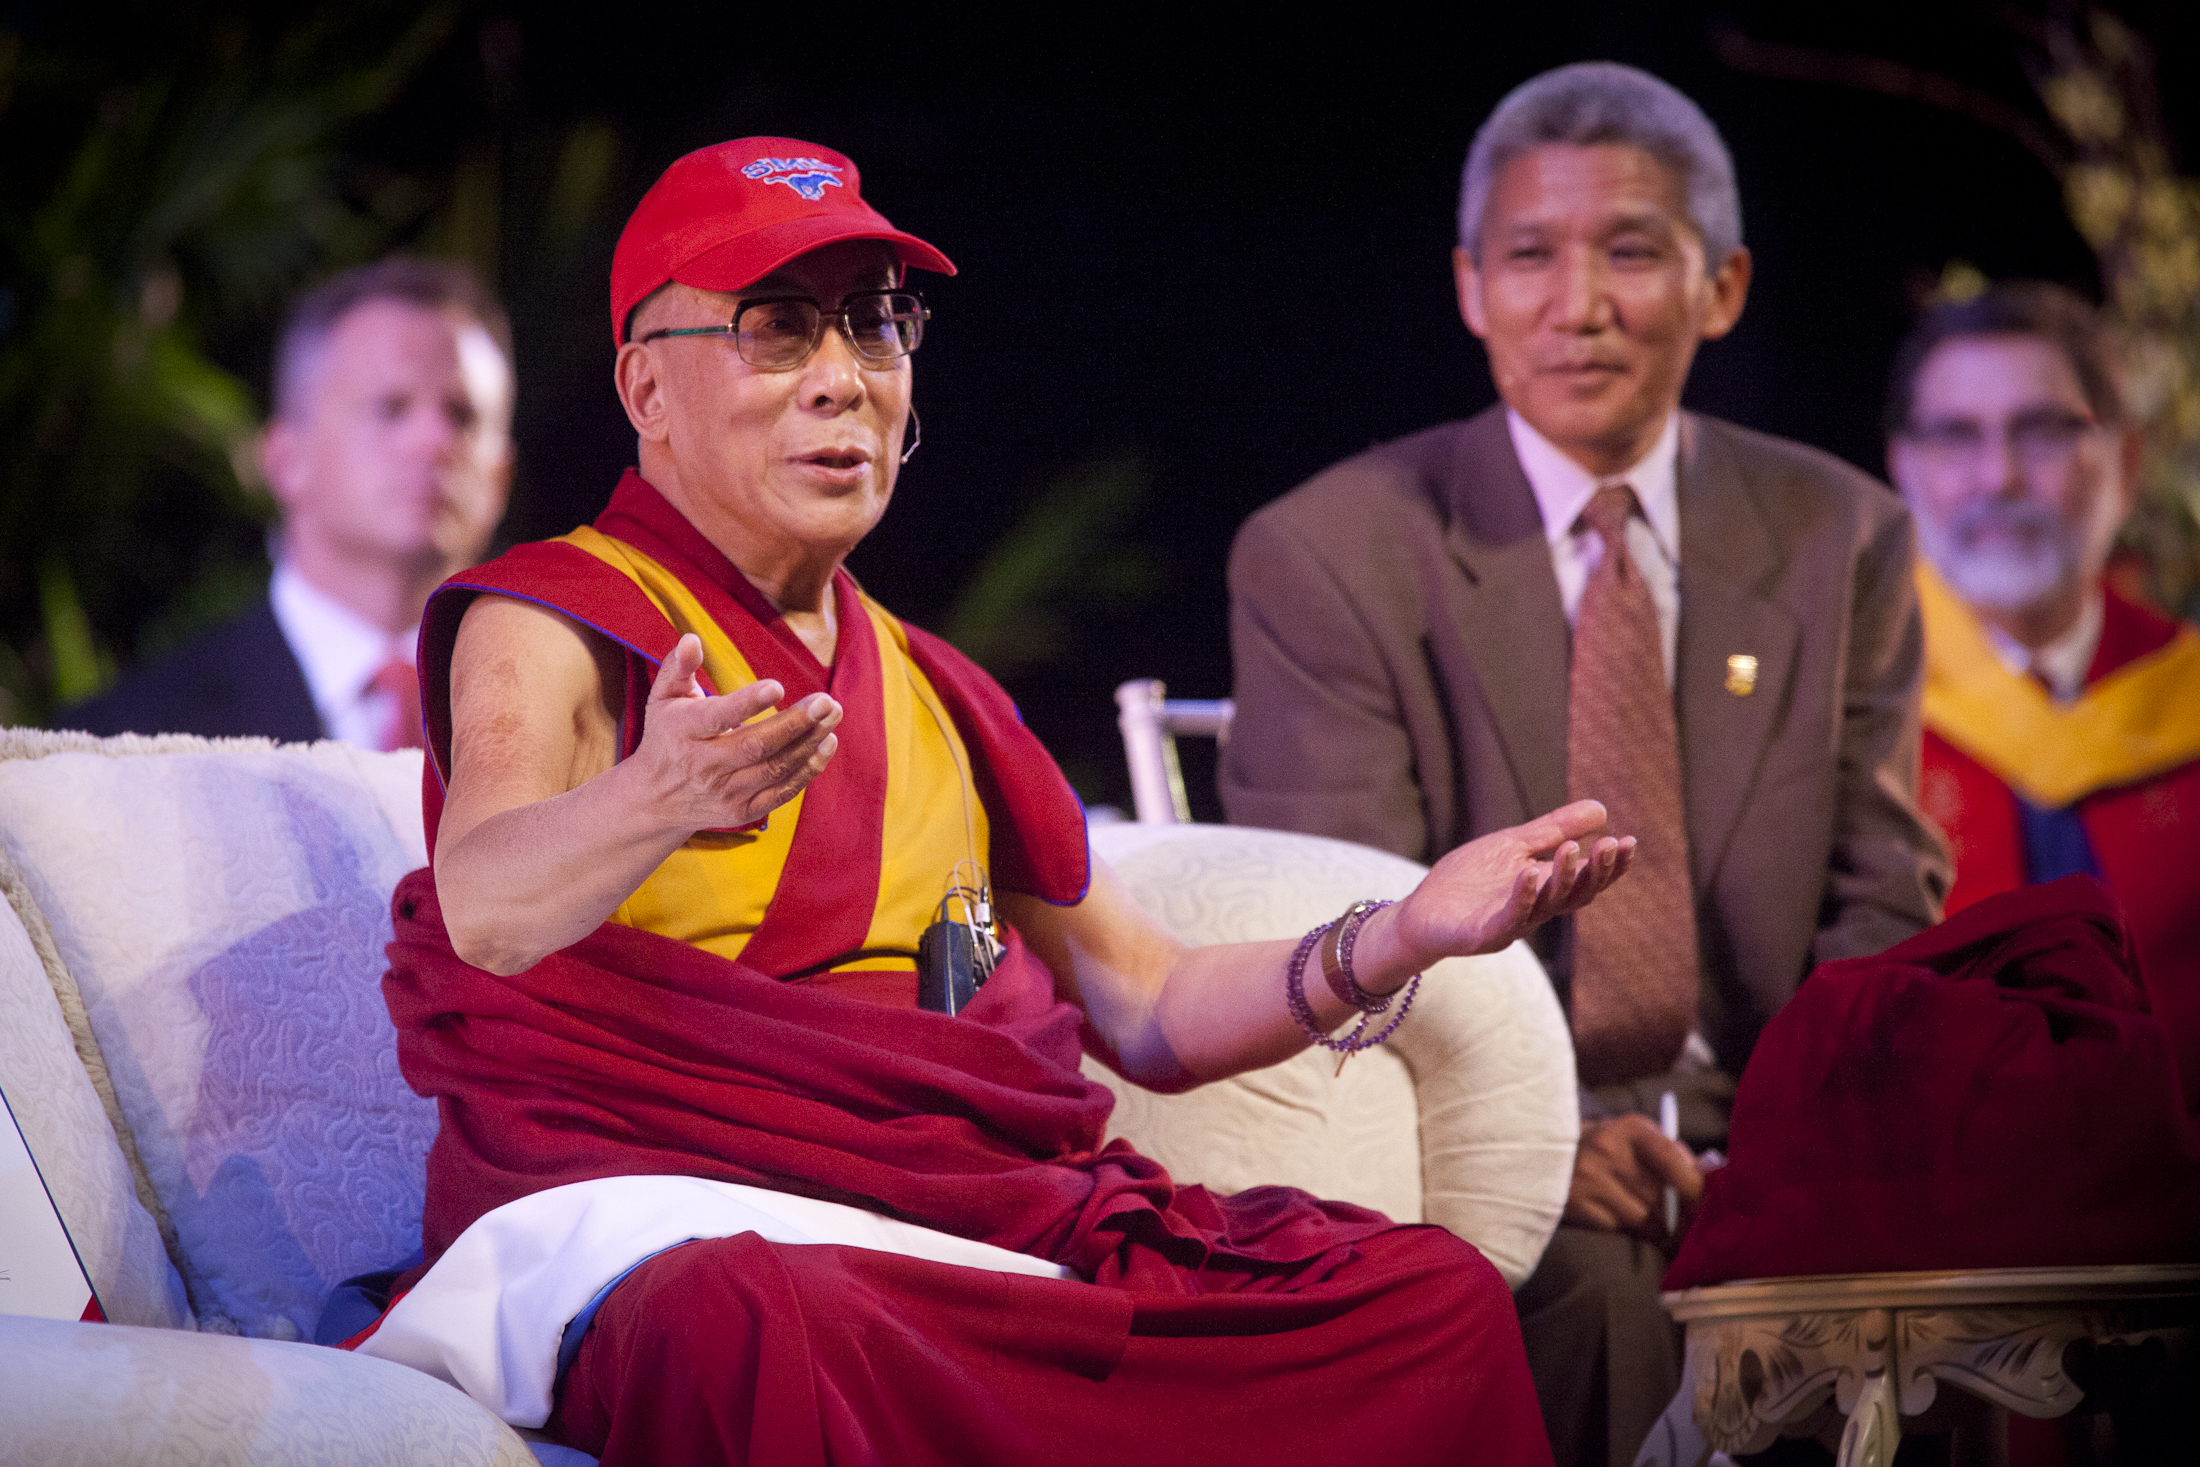 The Dalai Lama wearing an SMU baseball cap.